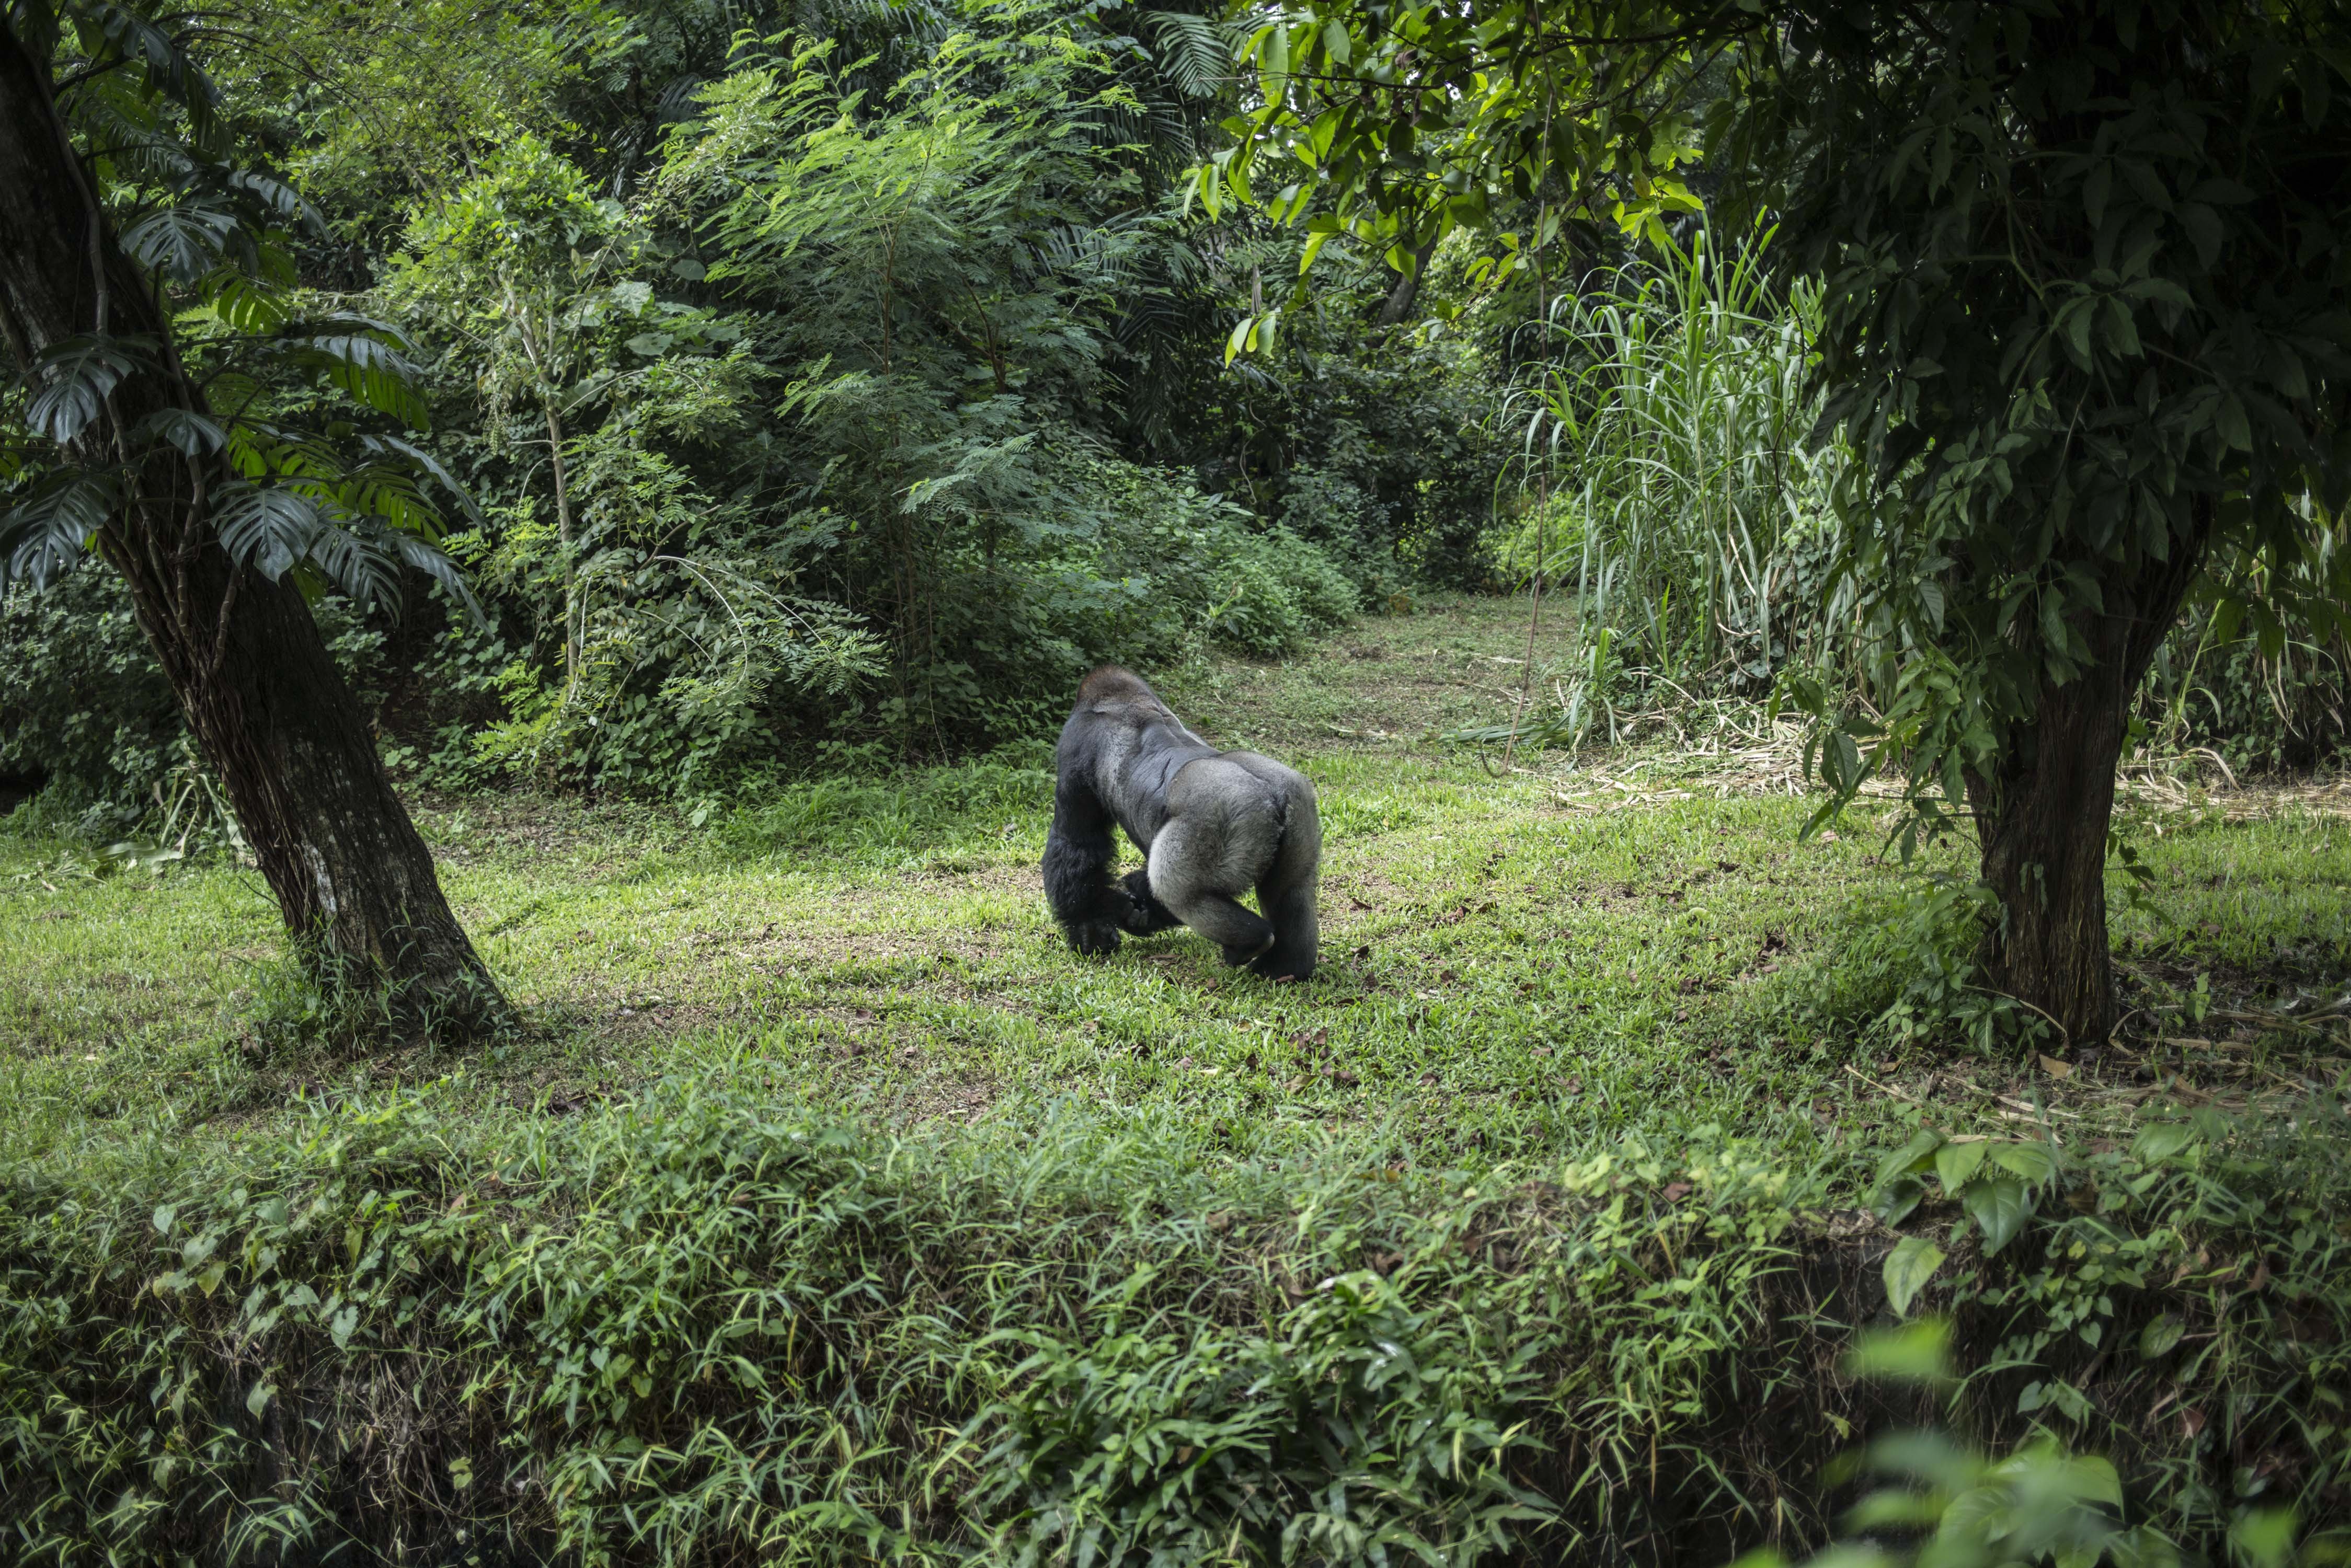 Gorila di Taman Margasatwa Ragunan, Jakarta Selatan (22/4/2020). Satwa-satwa di Taman Margasatwa Ragunan terlihat lebih tenang dan fresh sejak penutupan lokasi mulai 14 Maret untuk mencegah penyebaran virus corona COVID-19.